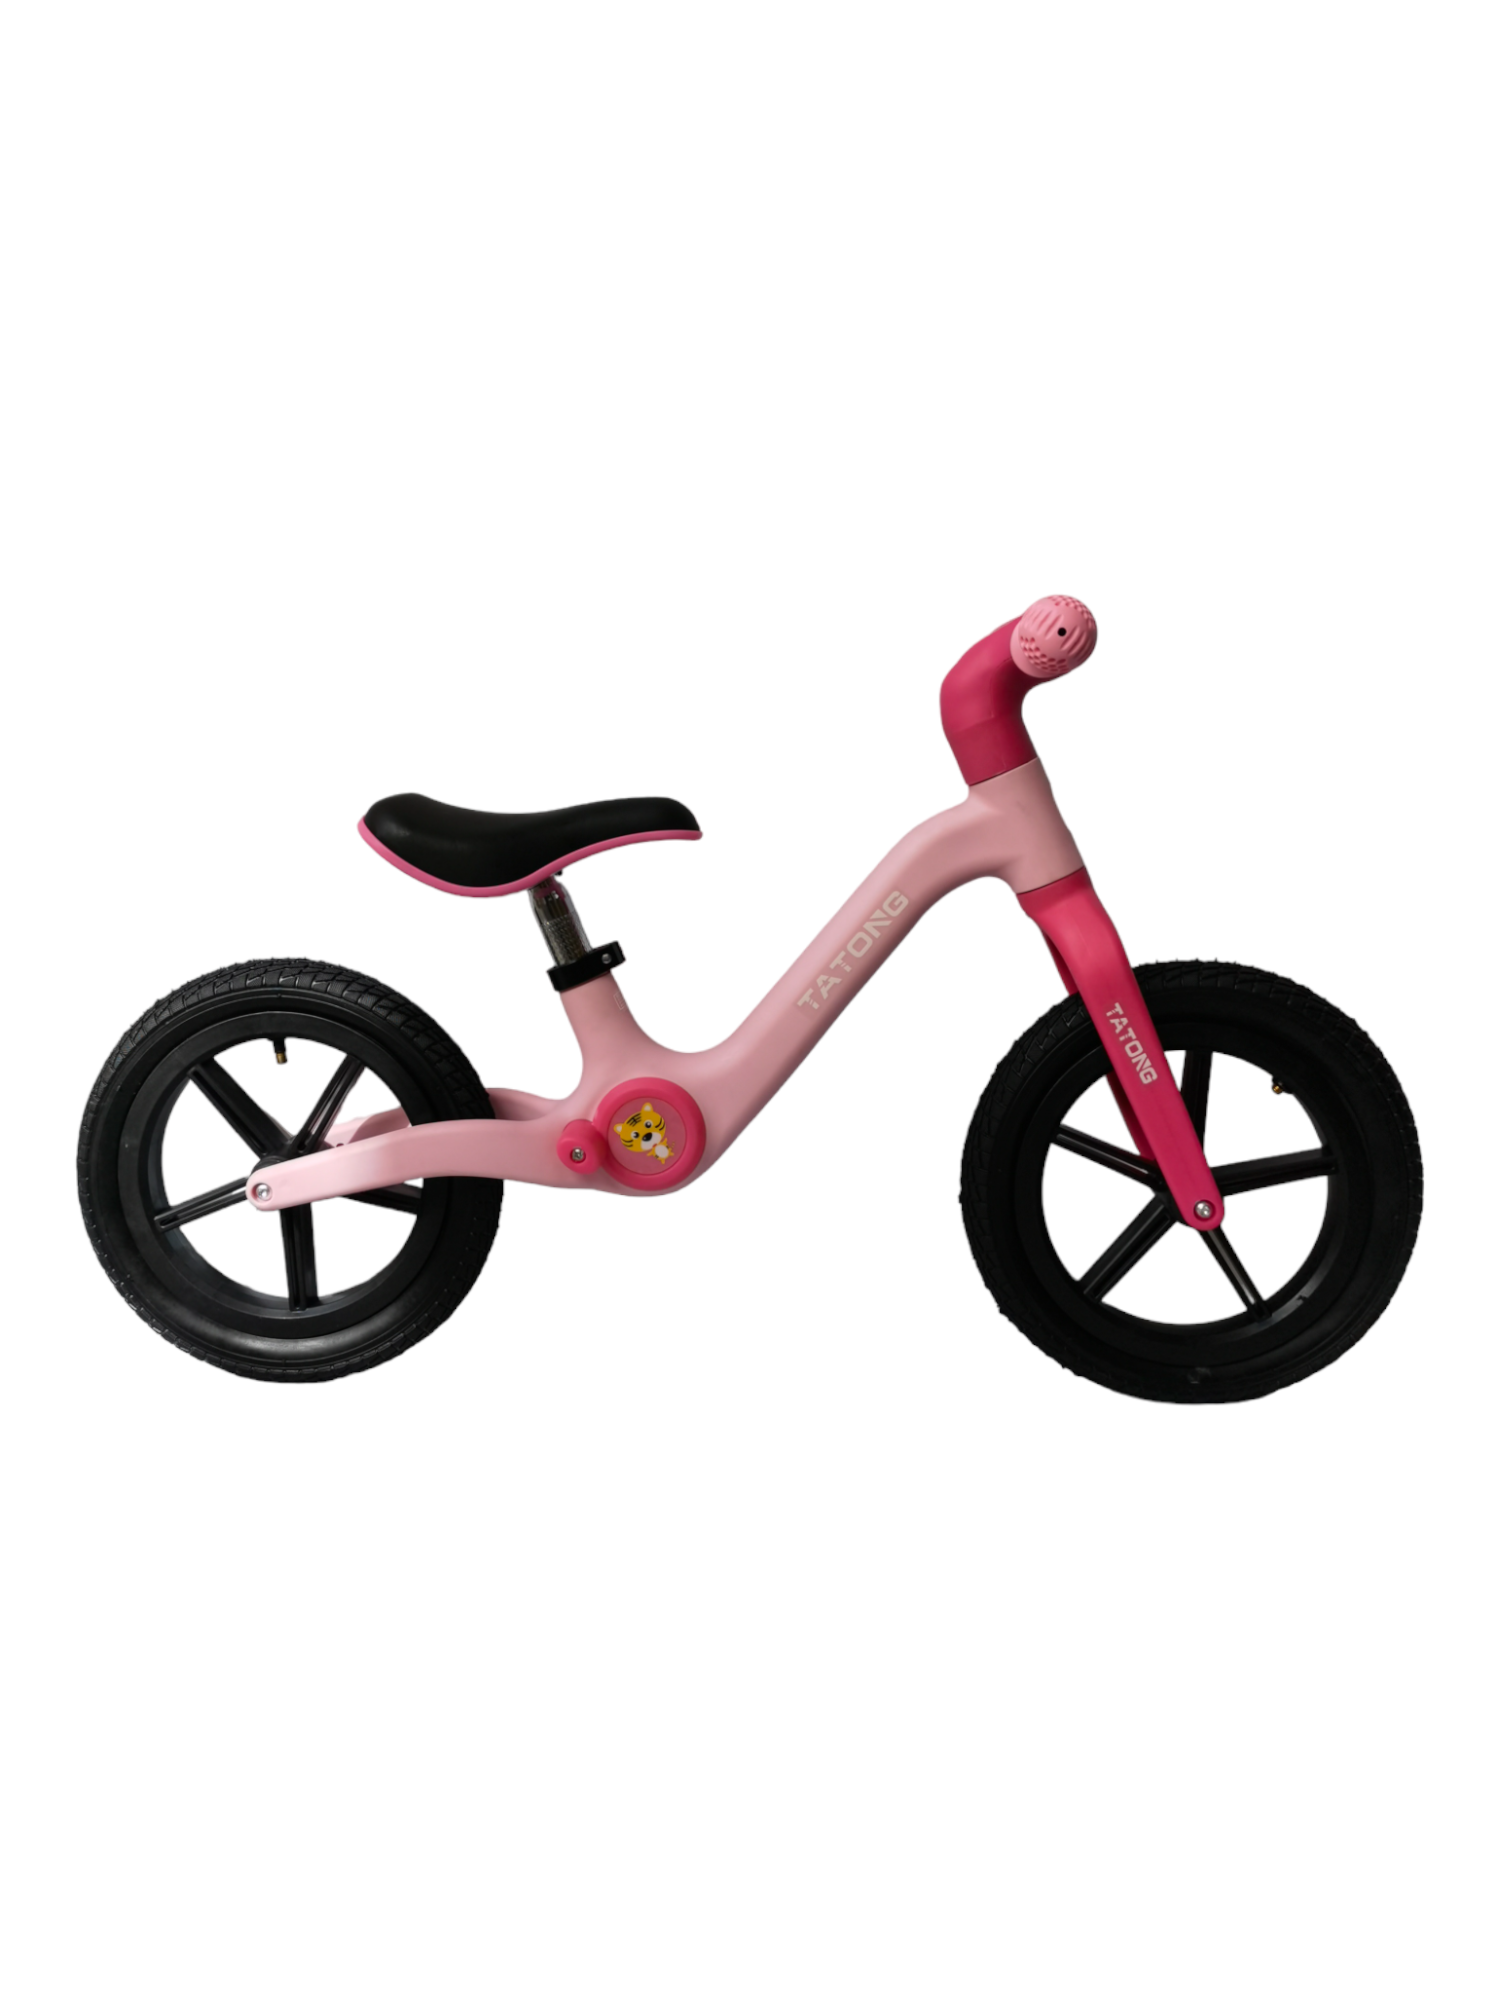 COSTWAY Bicicleta de Equilibrio para Niños, Bicicleta Ligera sin Pedales  con 4 Ruedas para Infantes, Correpasillos